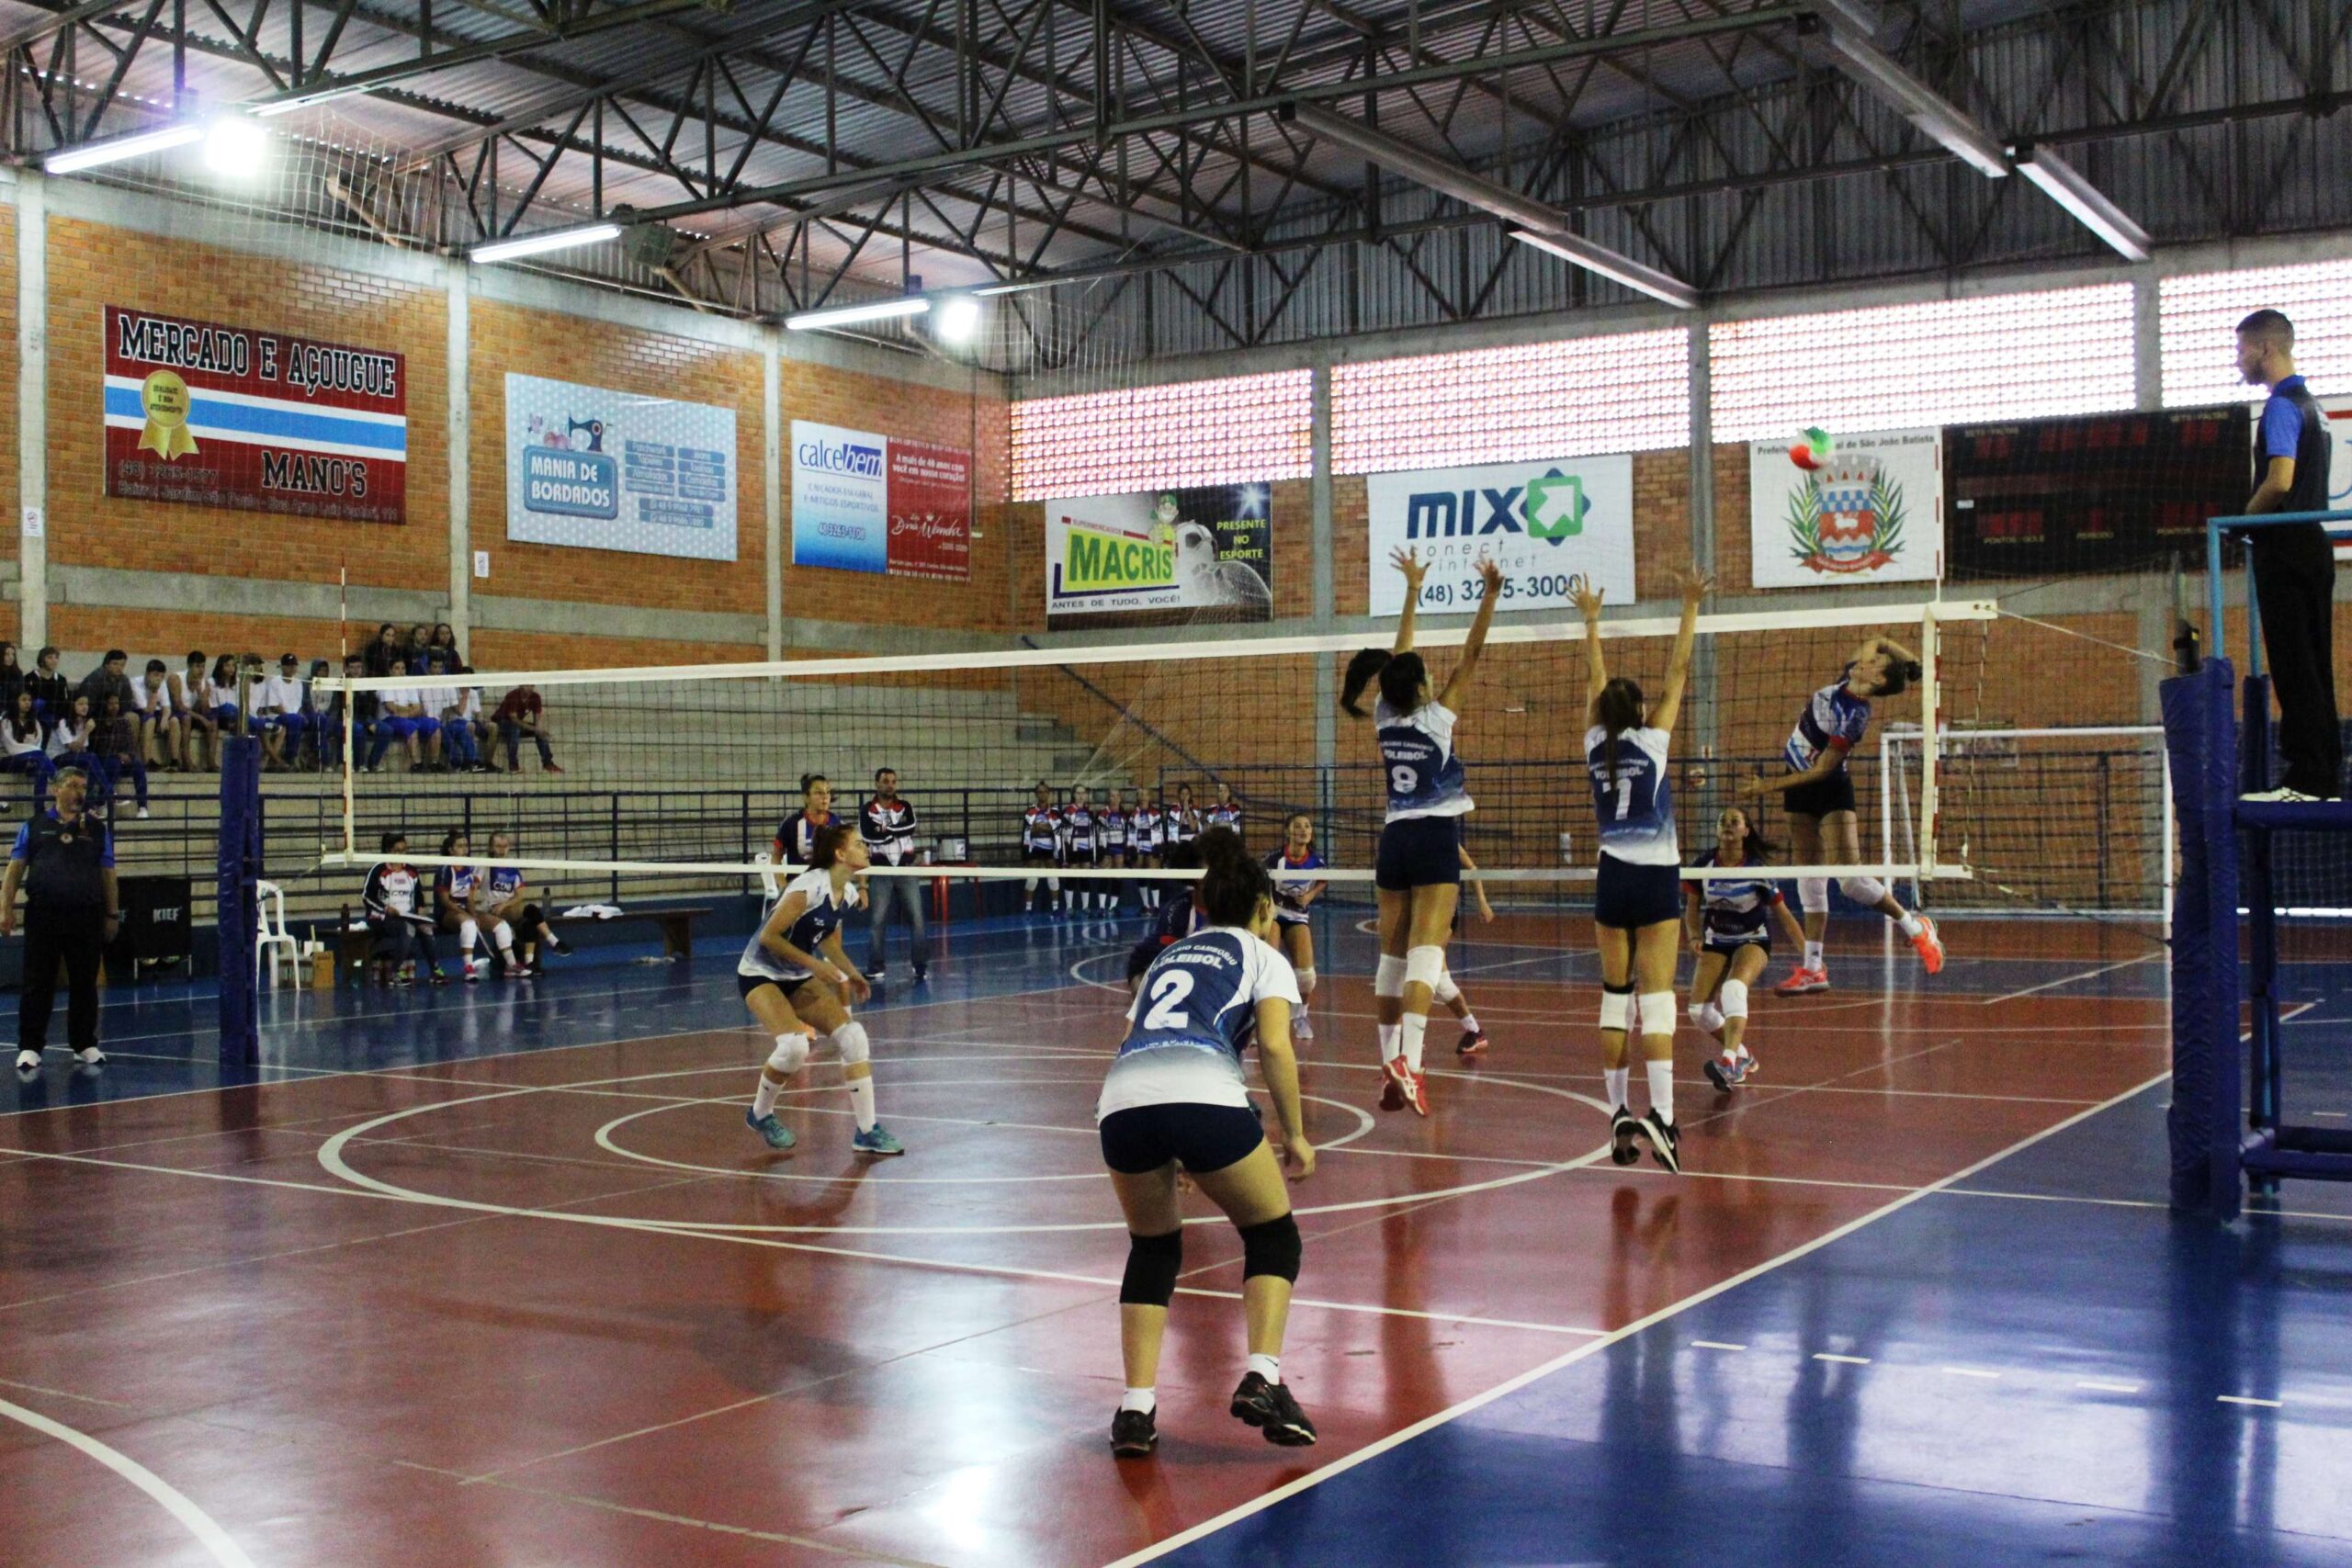 São João Batista sedia 3ª Copa Santa Catarina de Voleibol Feminino -  Prefeitura de São João Batista